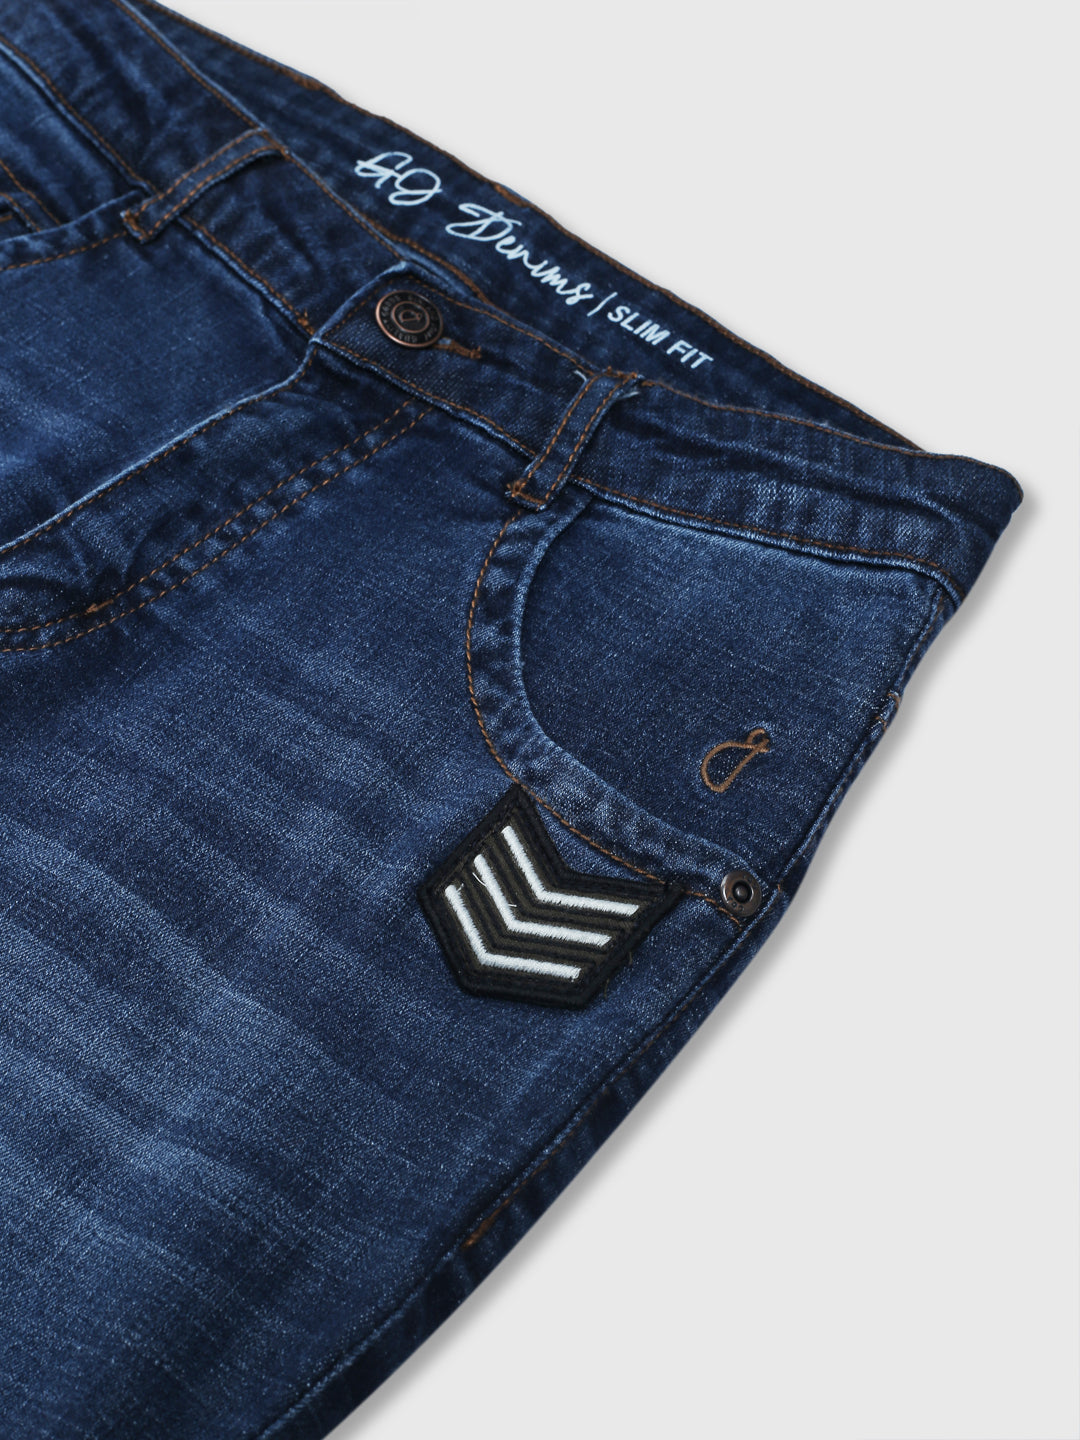 Boys Navy Blue Washed Denim Jeans